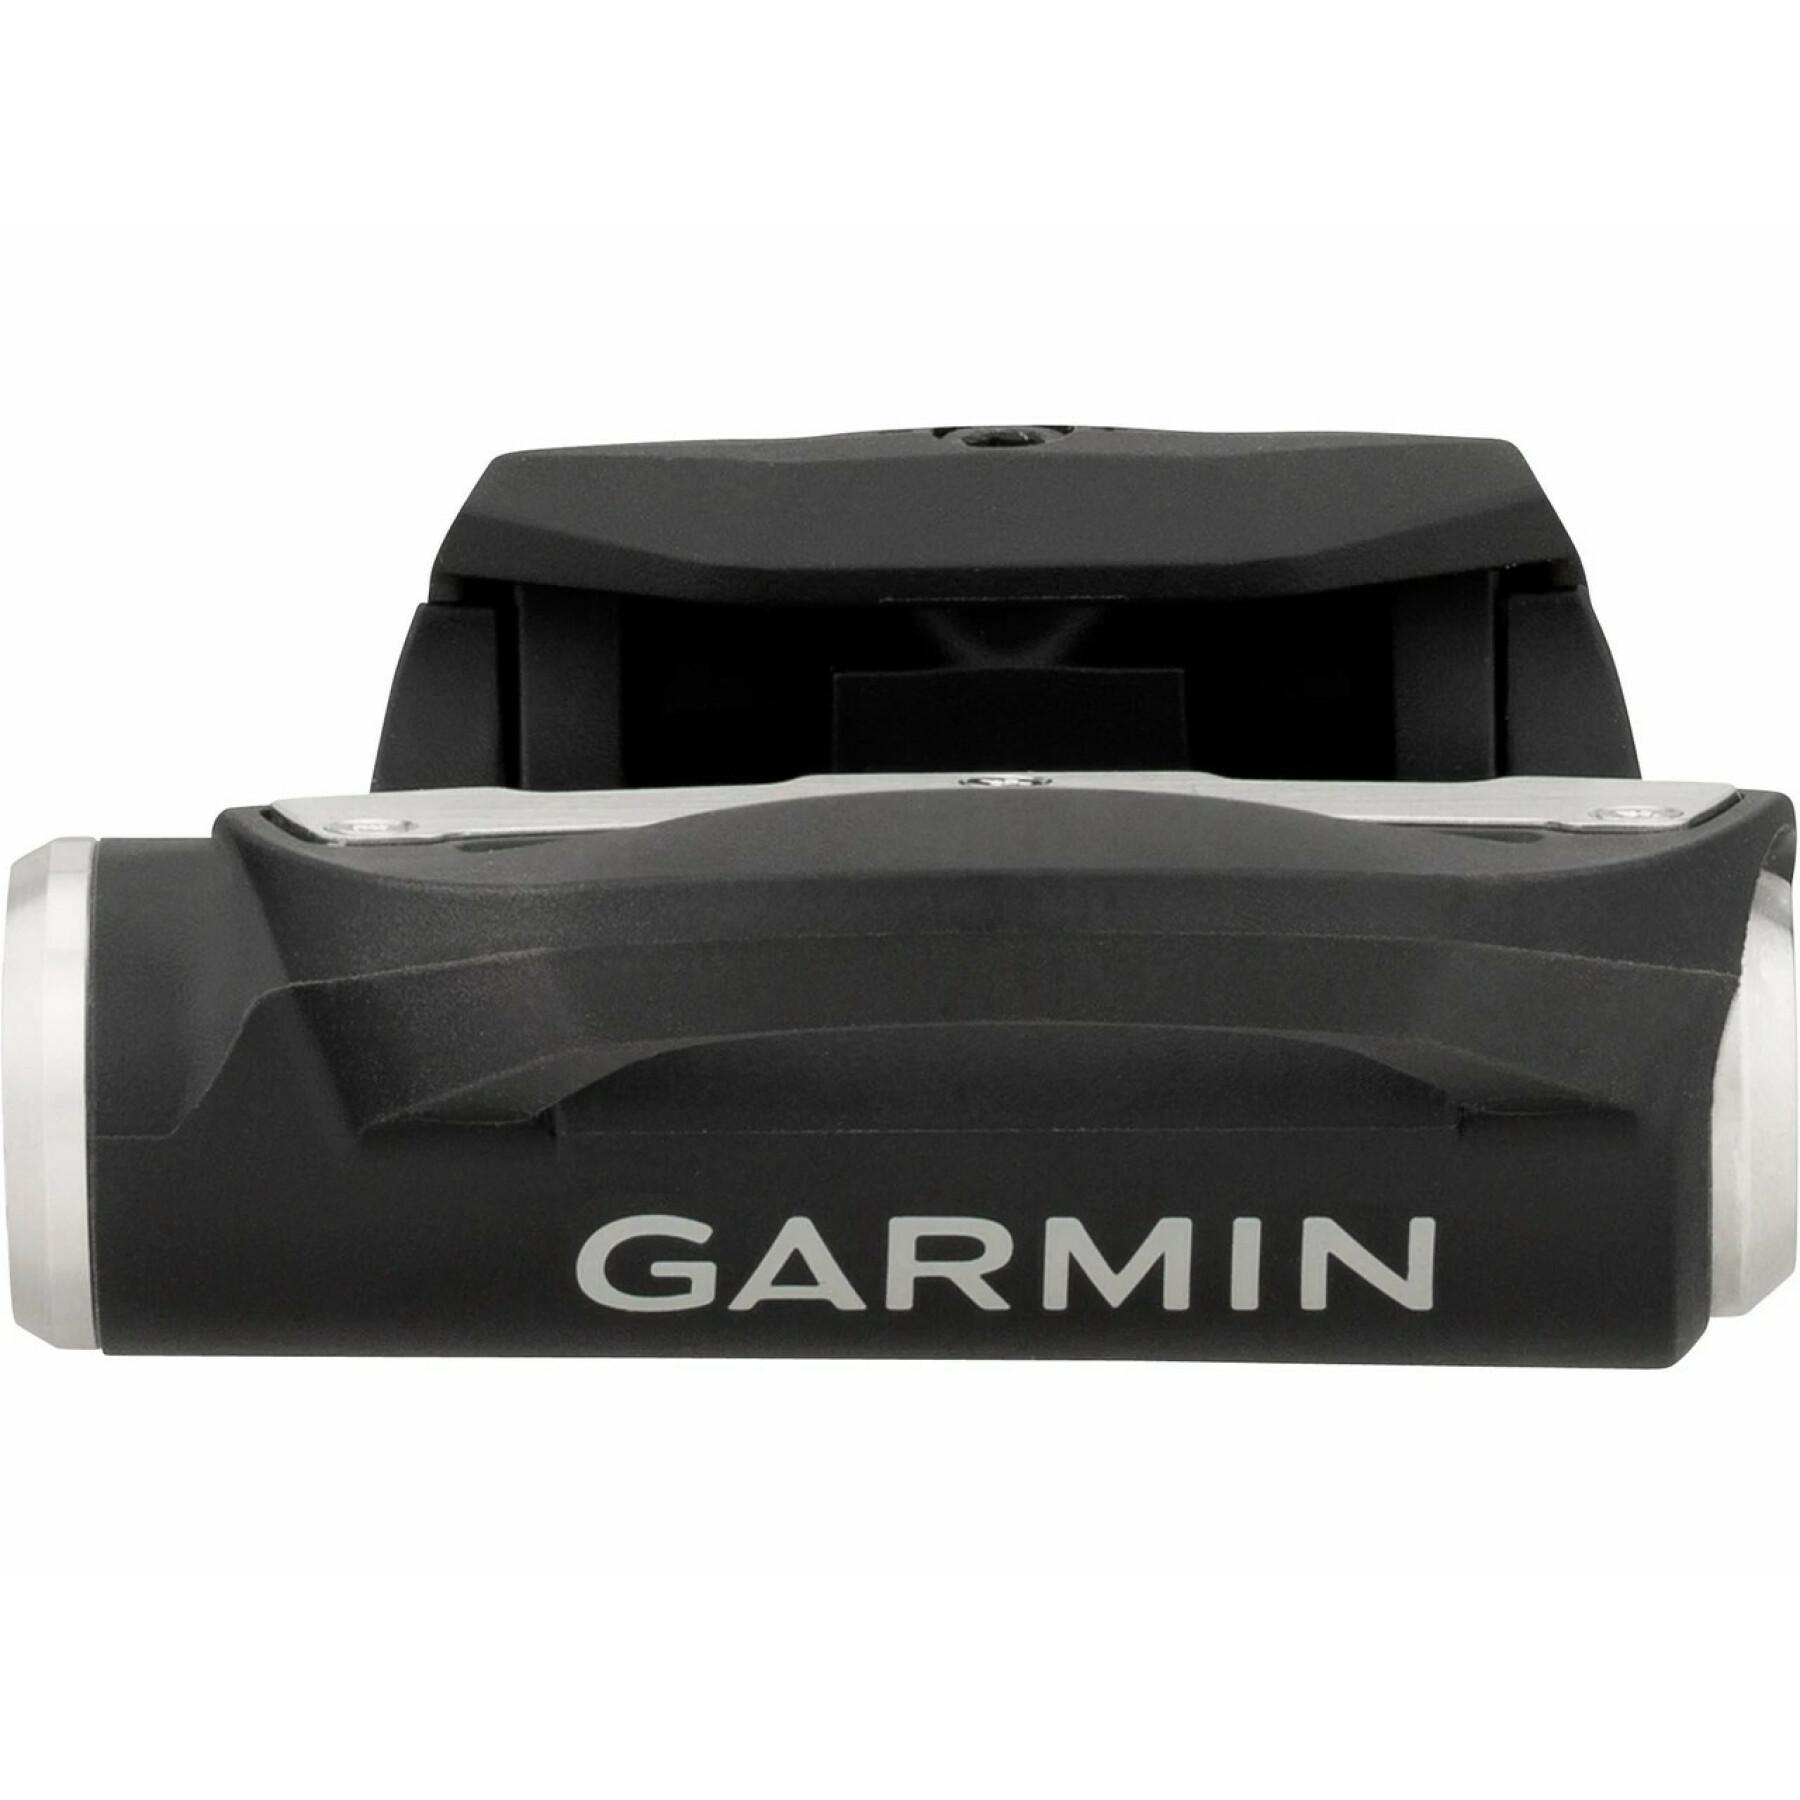 Kit de reconstrução do pedal esquerdo Garmin Rally rk